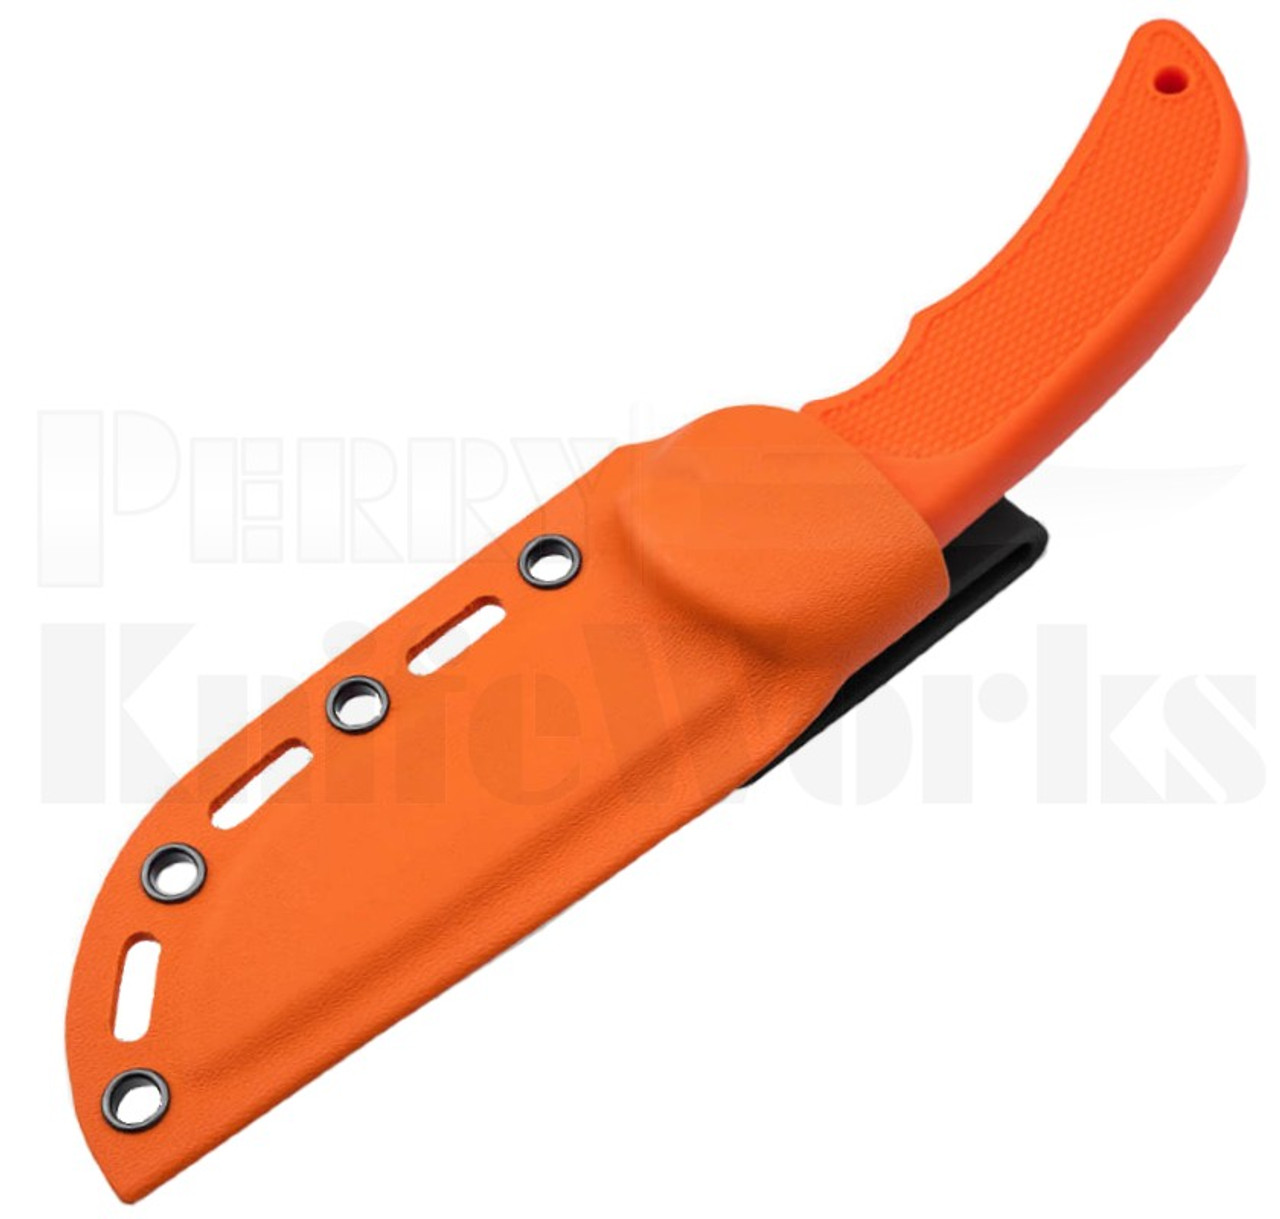 Boker Magnum HL Fixed Blade Knife Orange l 02RY800